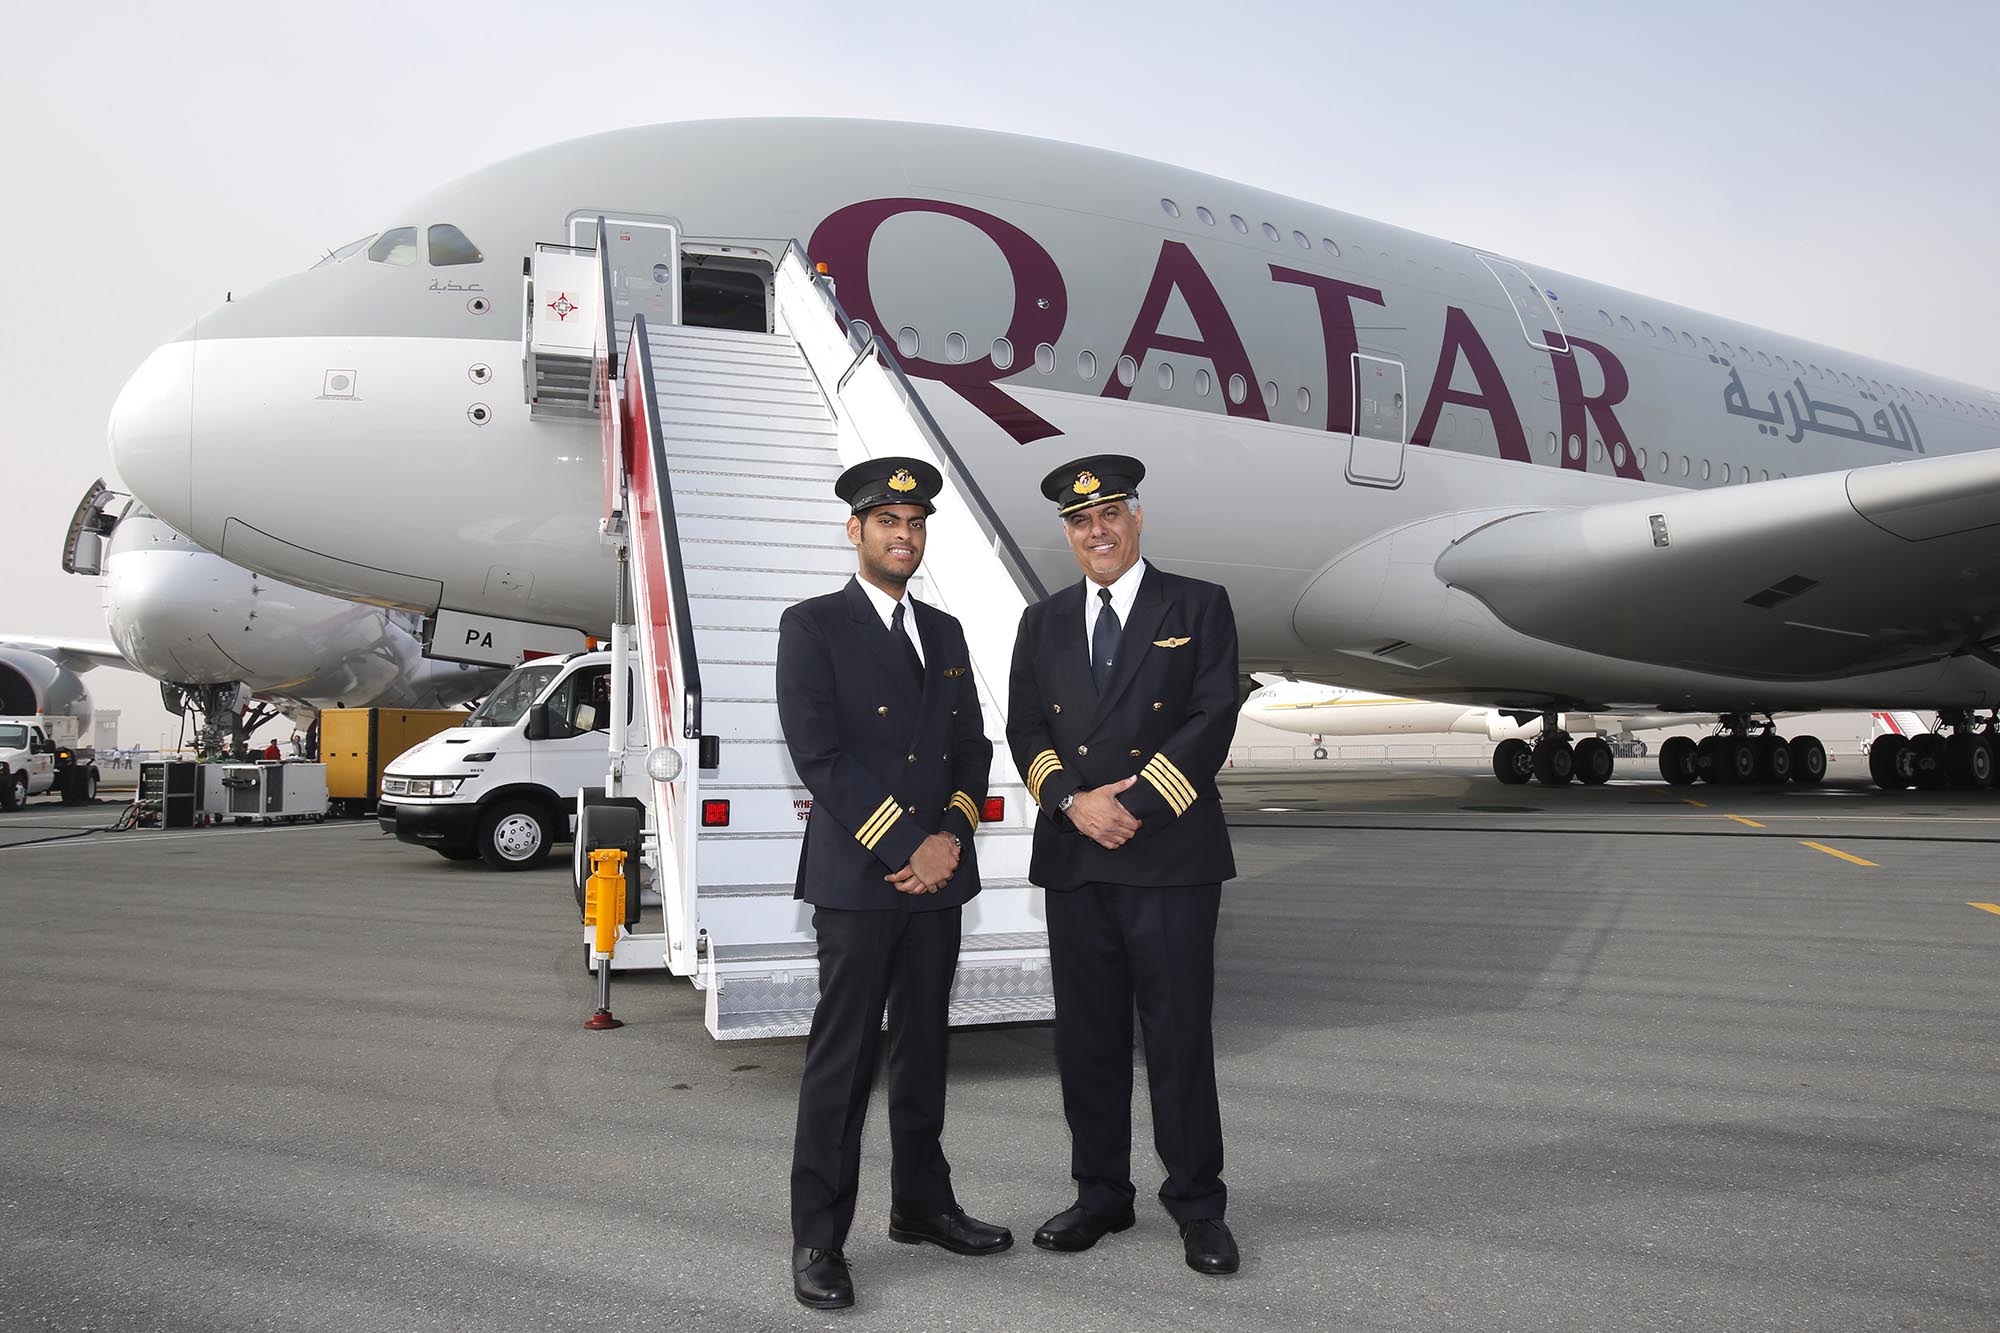 Qatar Airways_captain_pilot_cockpit_crew_Airbus A380